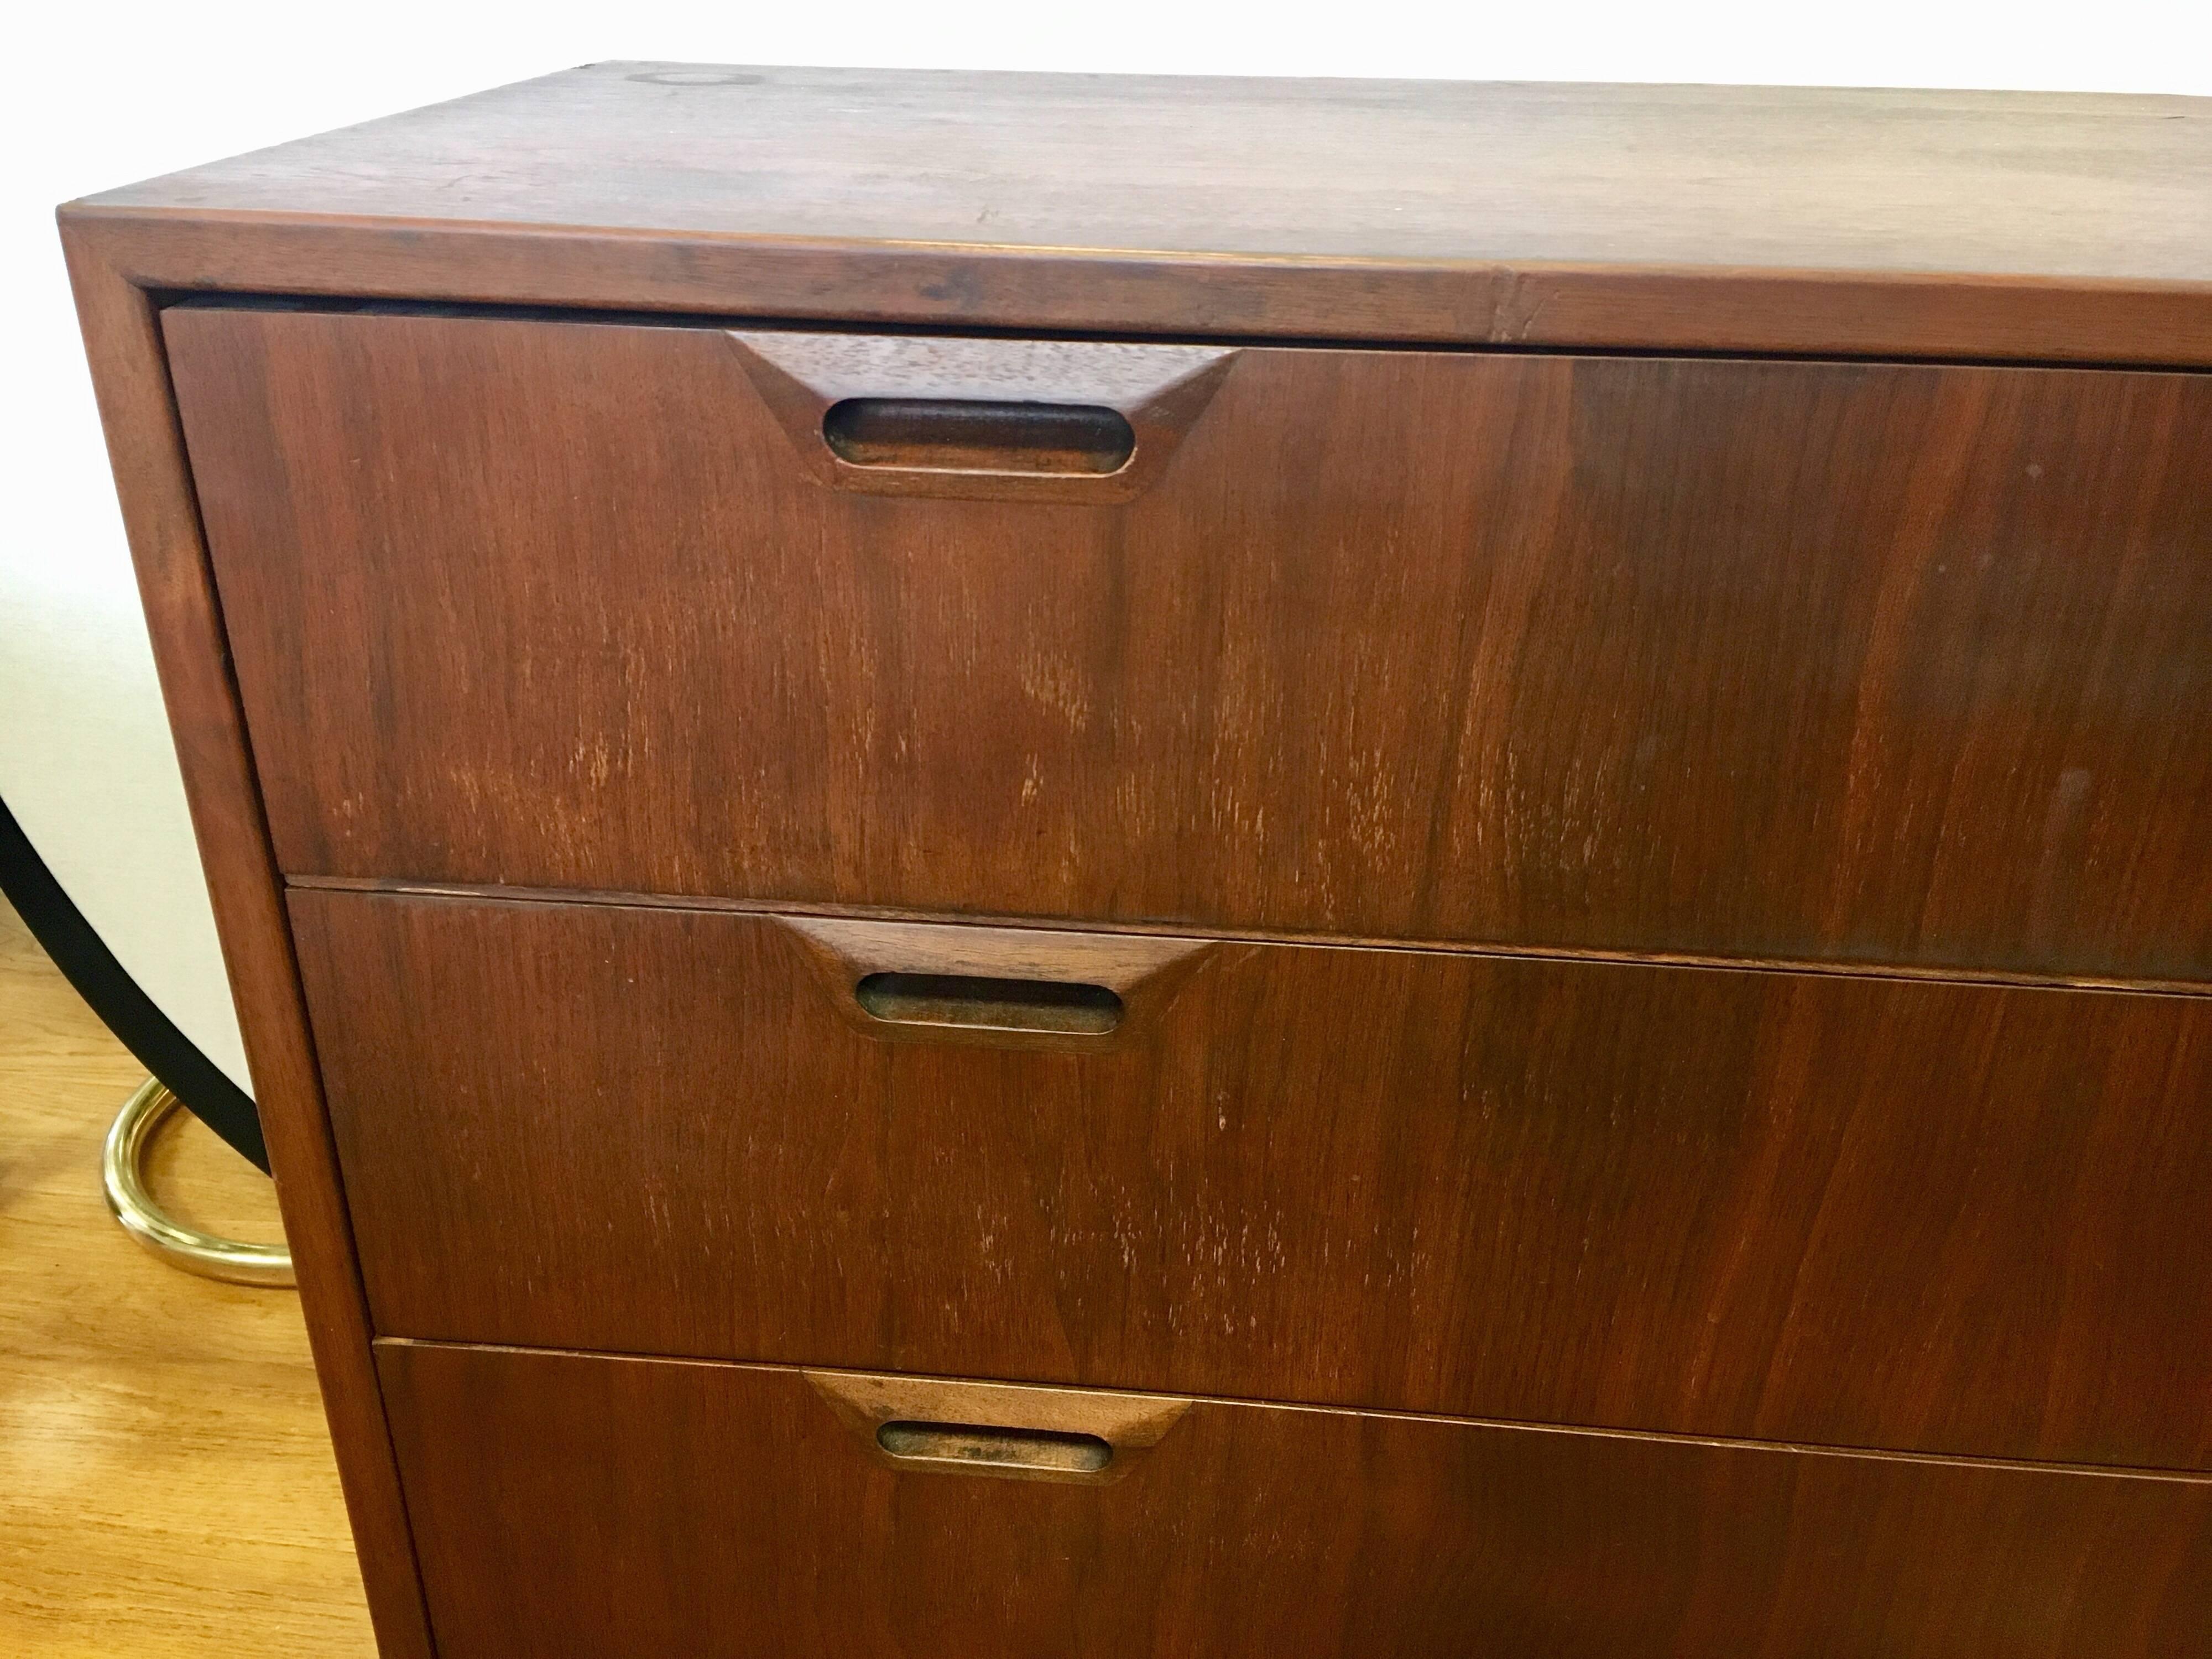 Scandinavian Mid-Century Modern chest of drawers designed by Sven Ellekaer for Albert Hansen as a part of their 